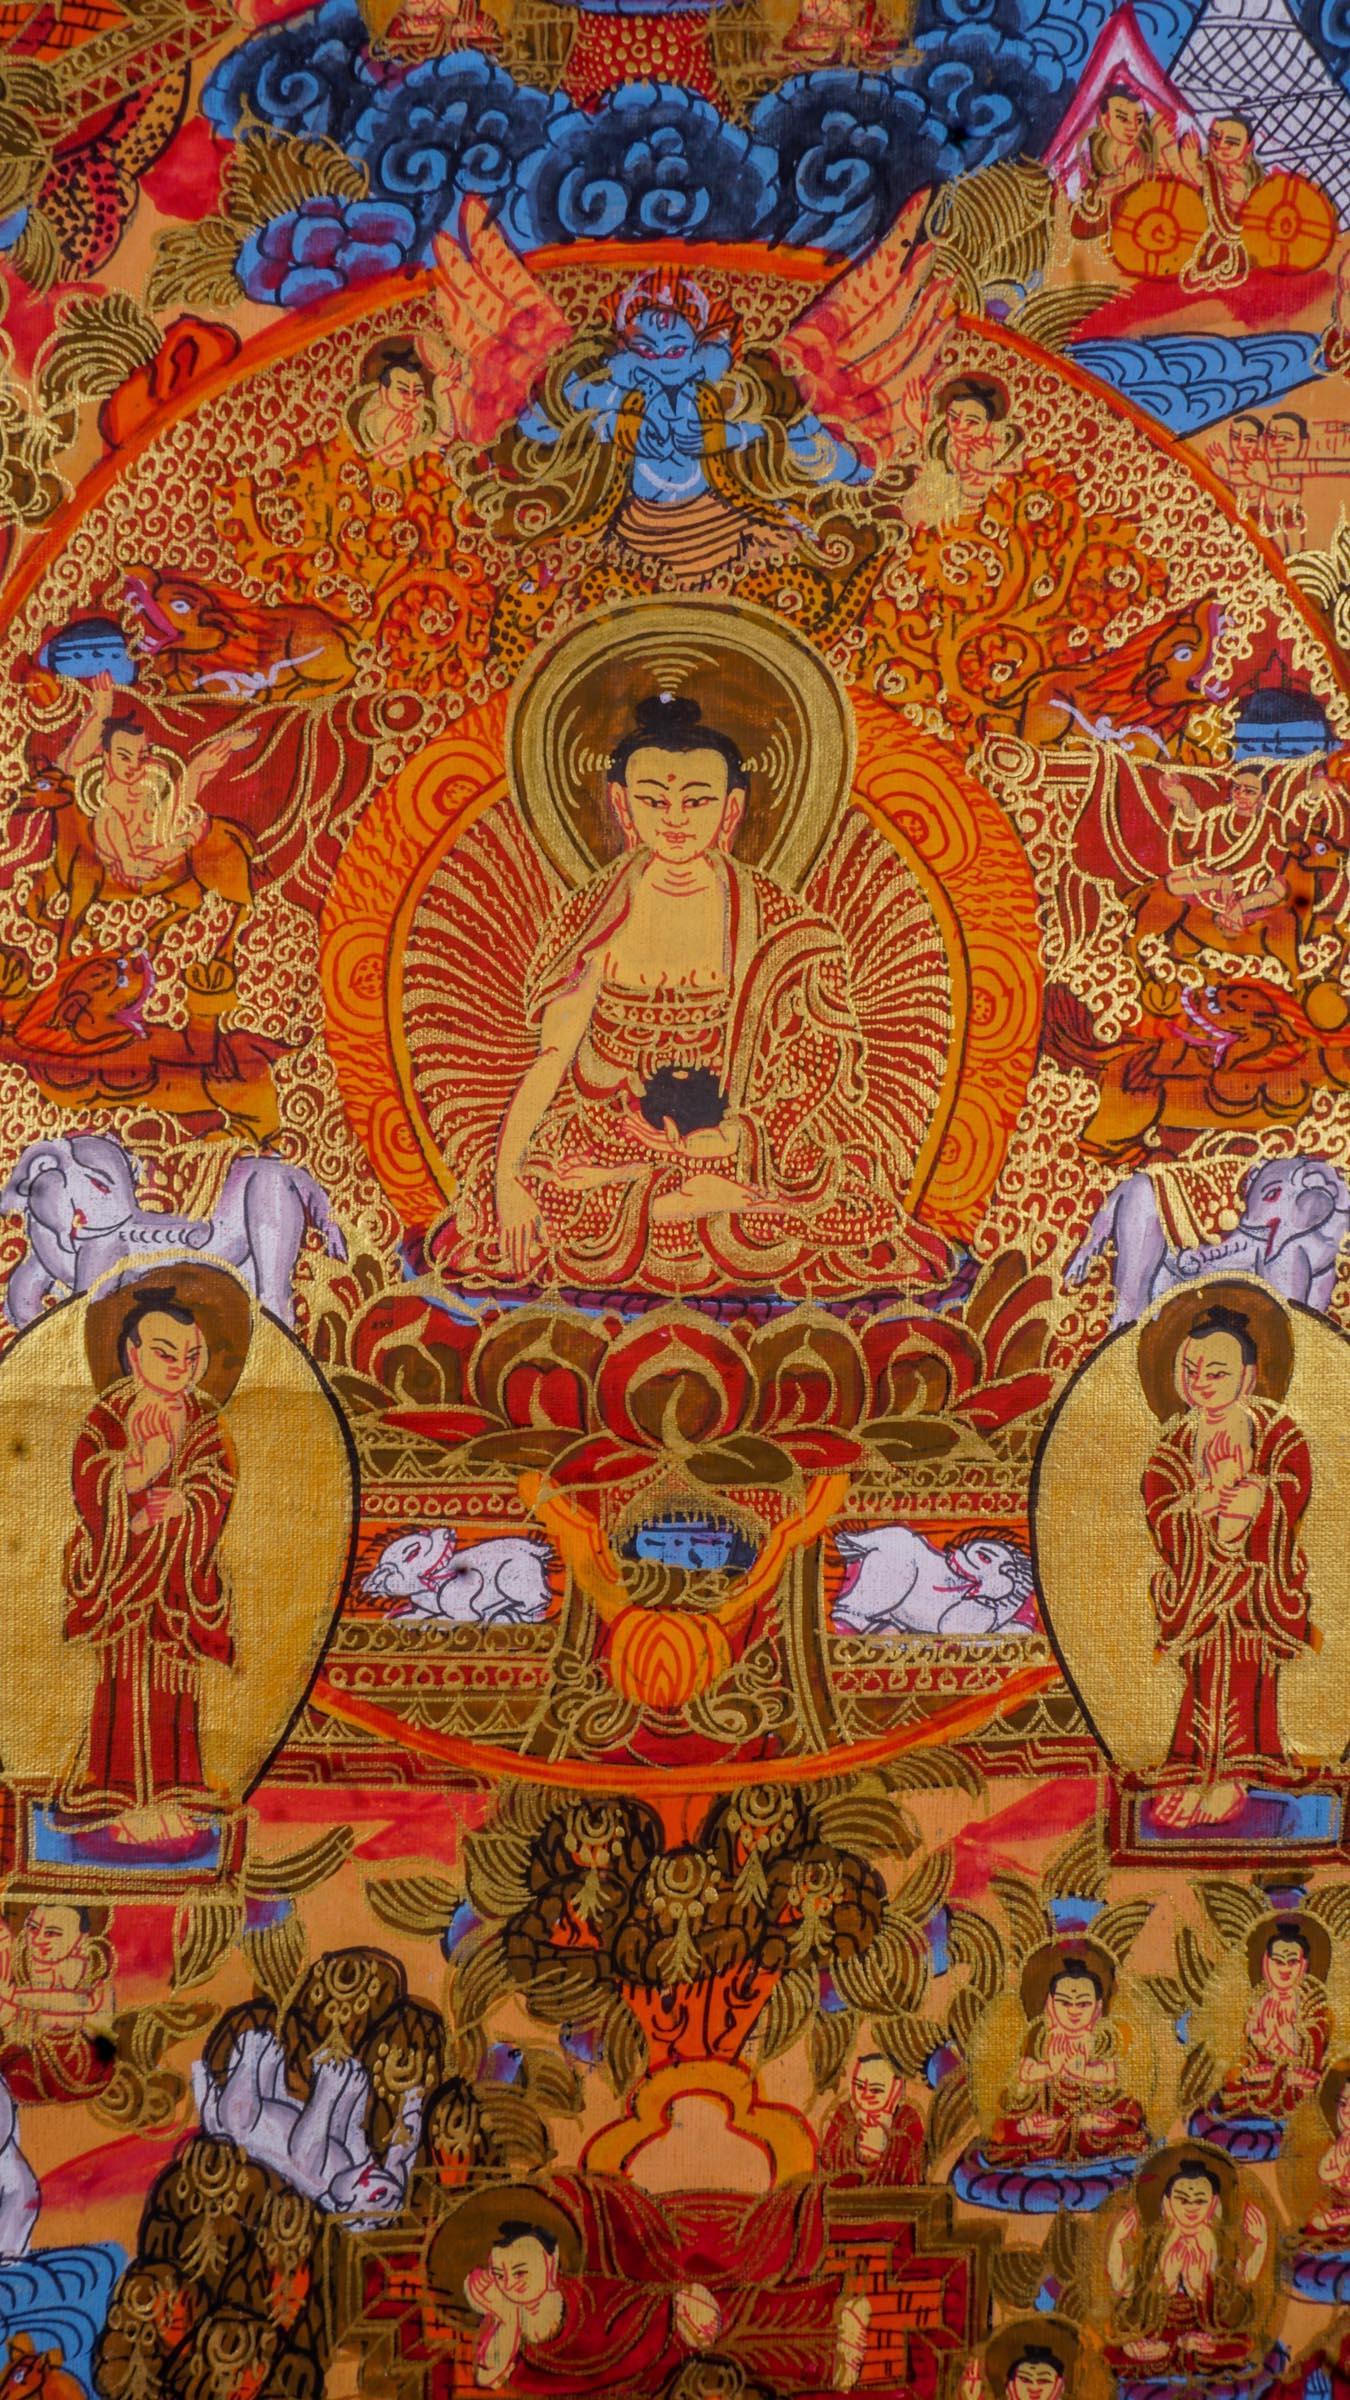 Buddha life story Tibetan Thangka art for wall hanging and positive energy on canvas